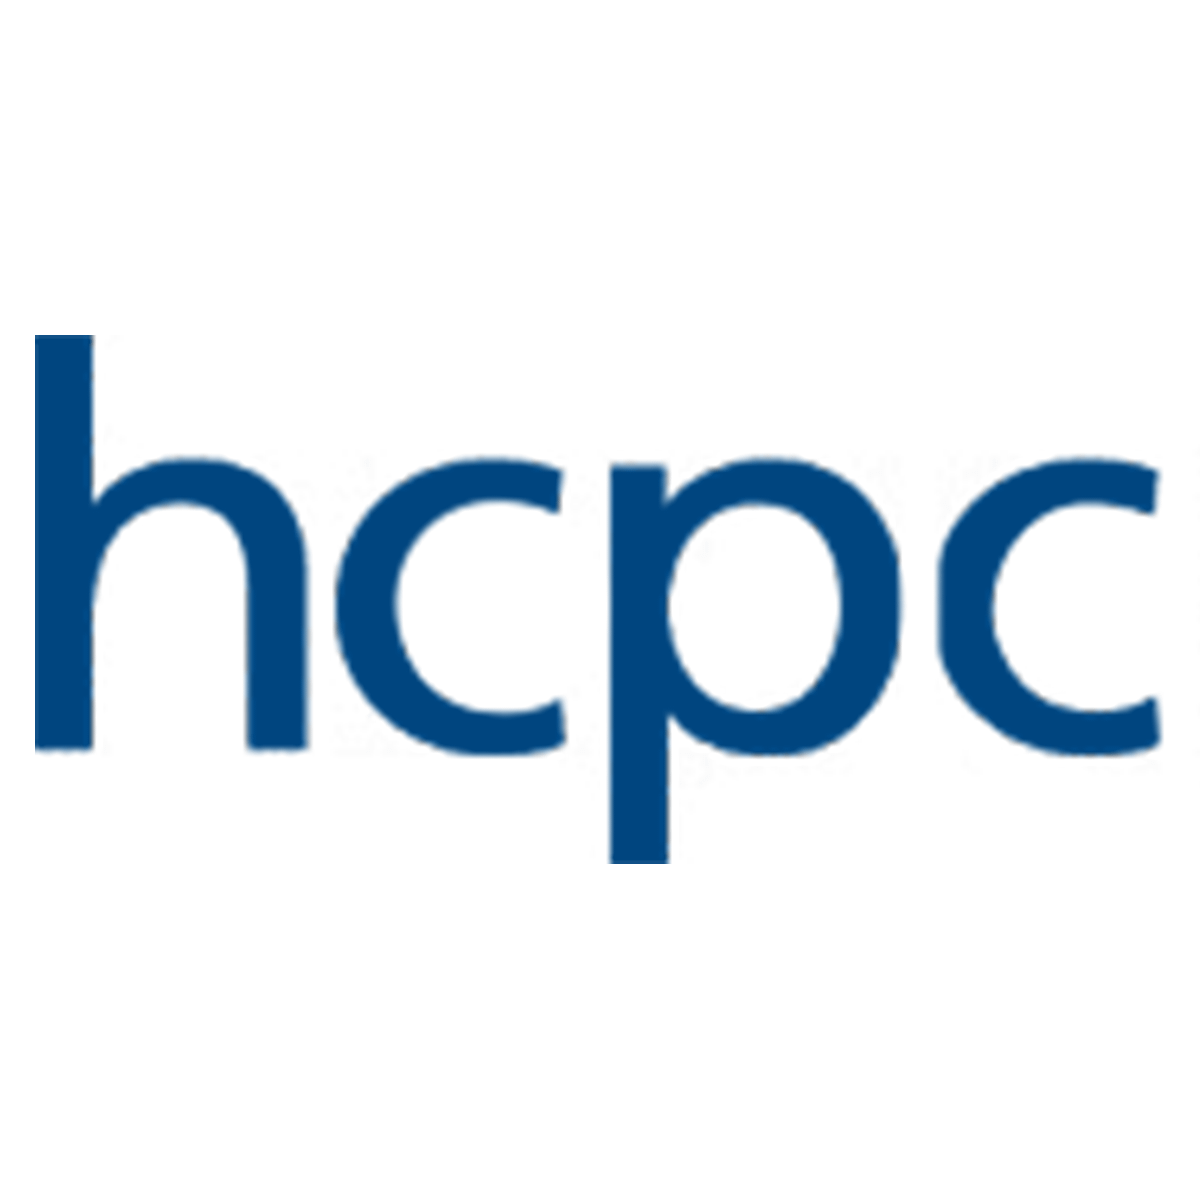 HCPC large logo